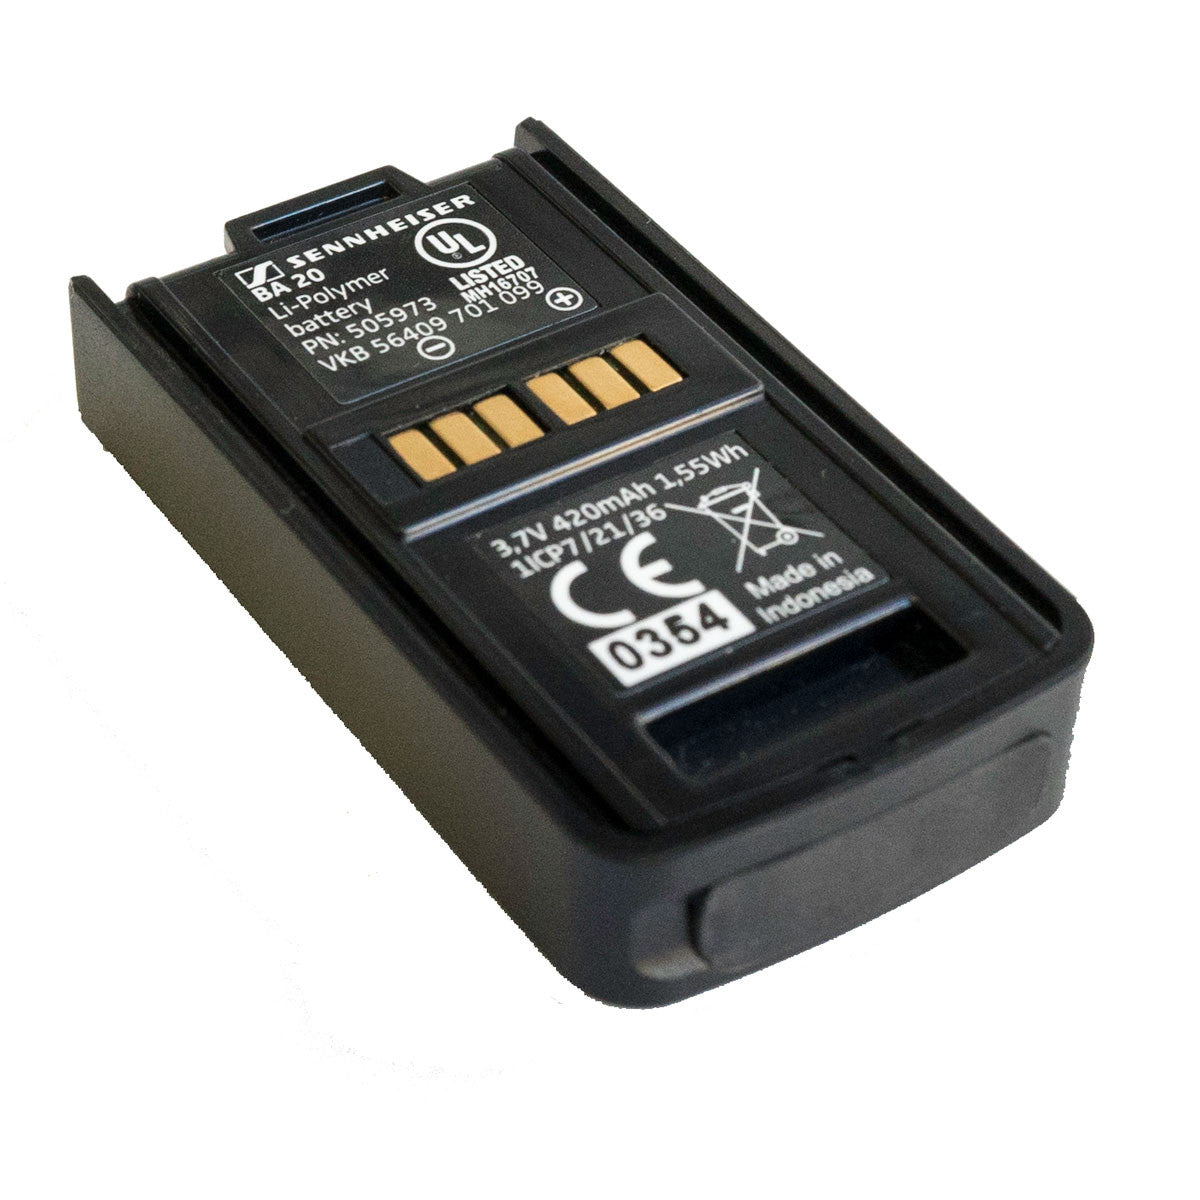 Sennheiser Rechargeable Battery Pack for AVX Receiver